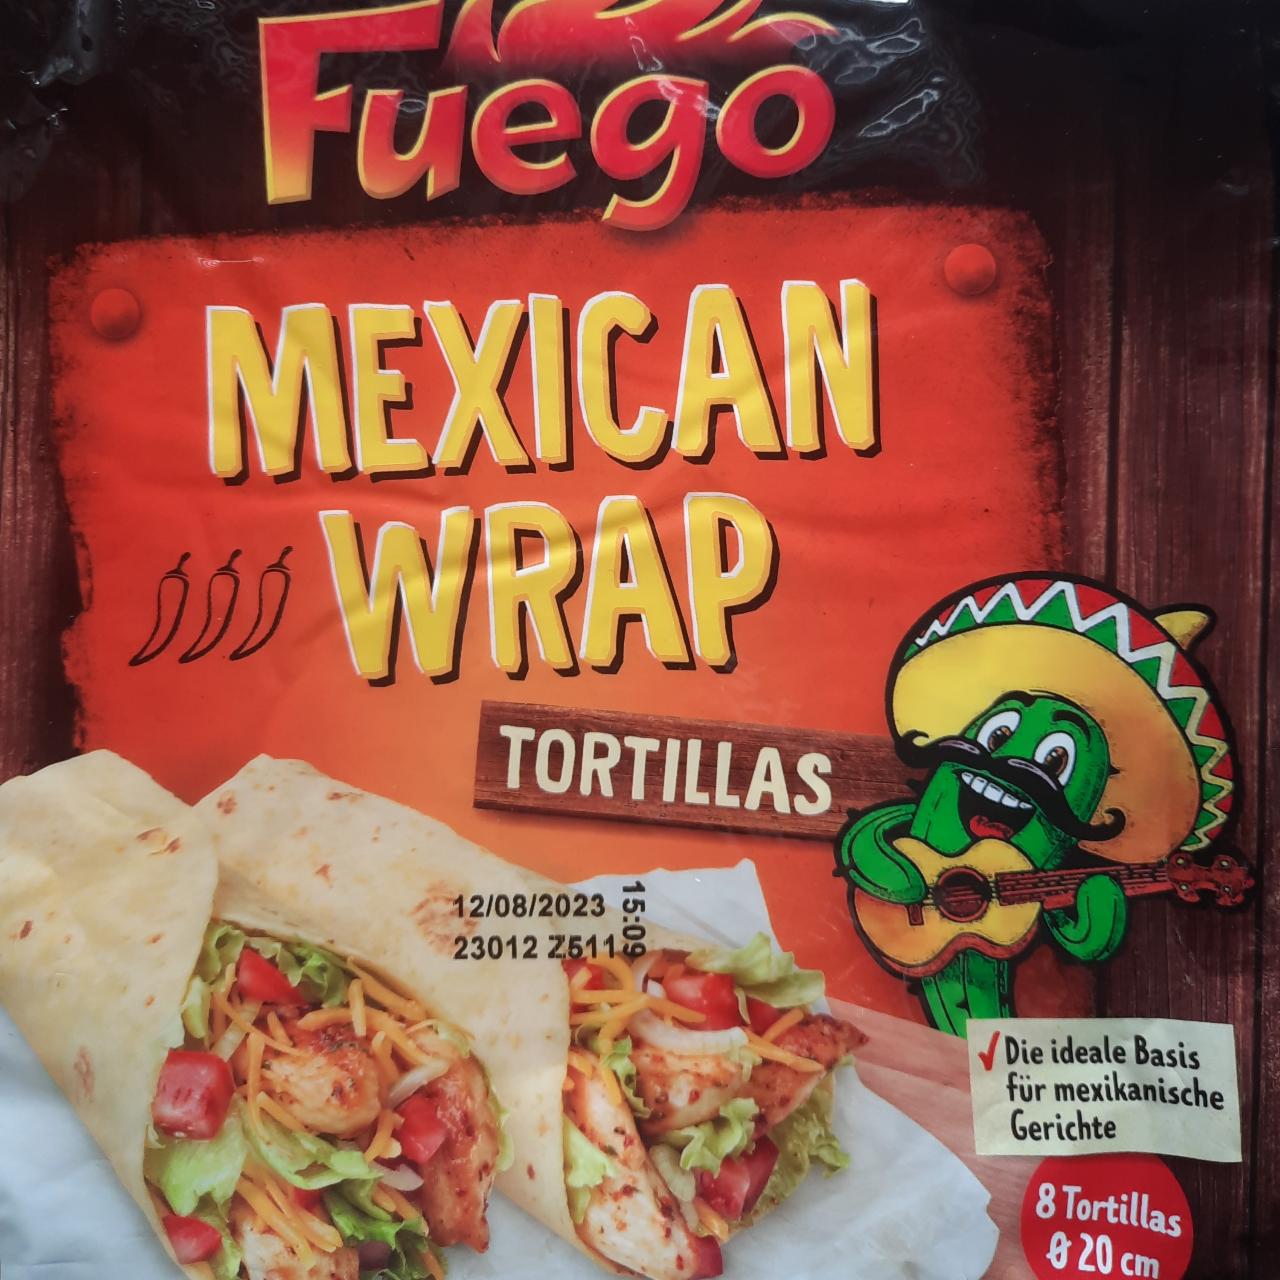 Fotografie - Mexican Wrap Tortillas Fuego